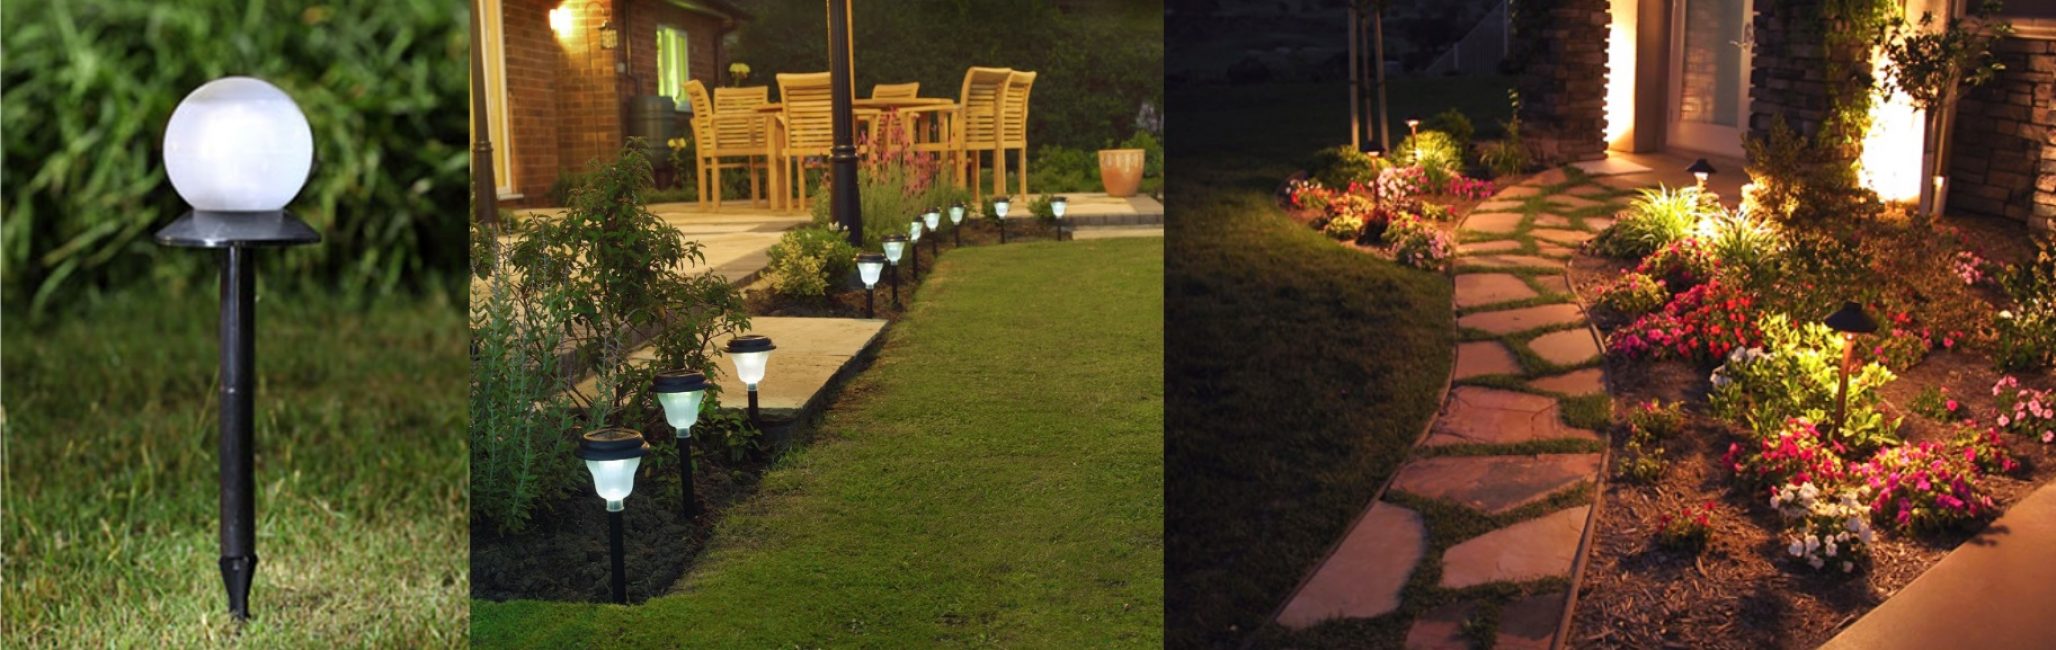 Alegeți o lampă care să se potrivească stilului dvs. de grădină